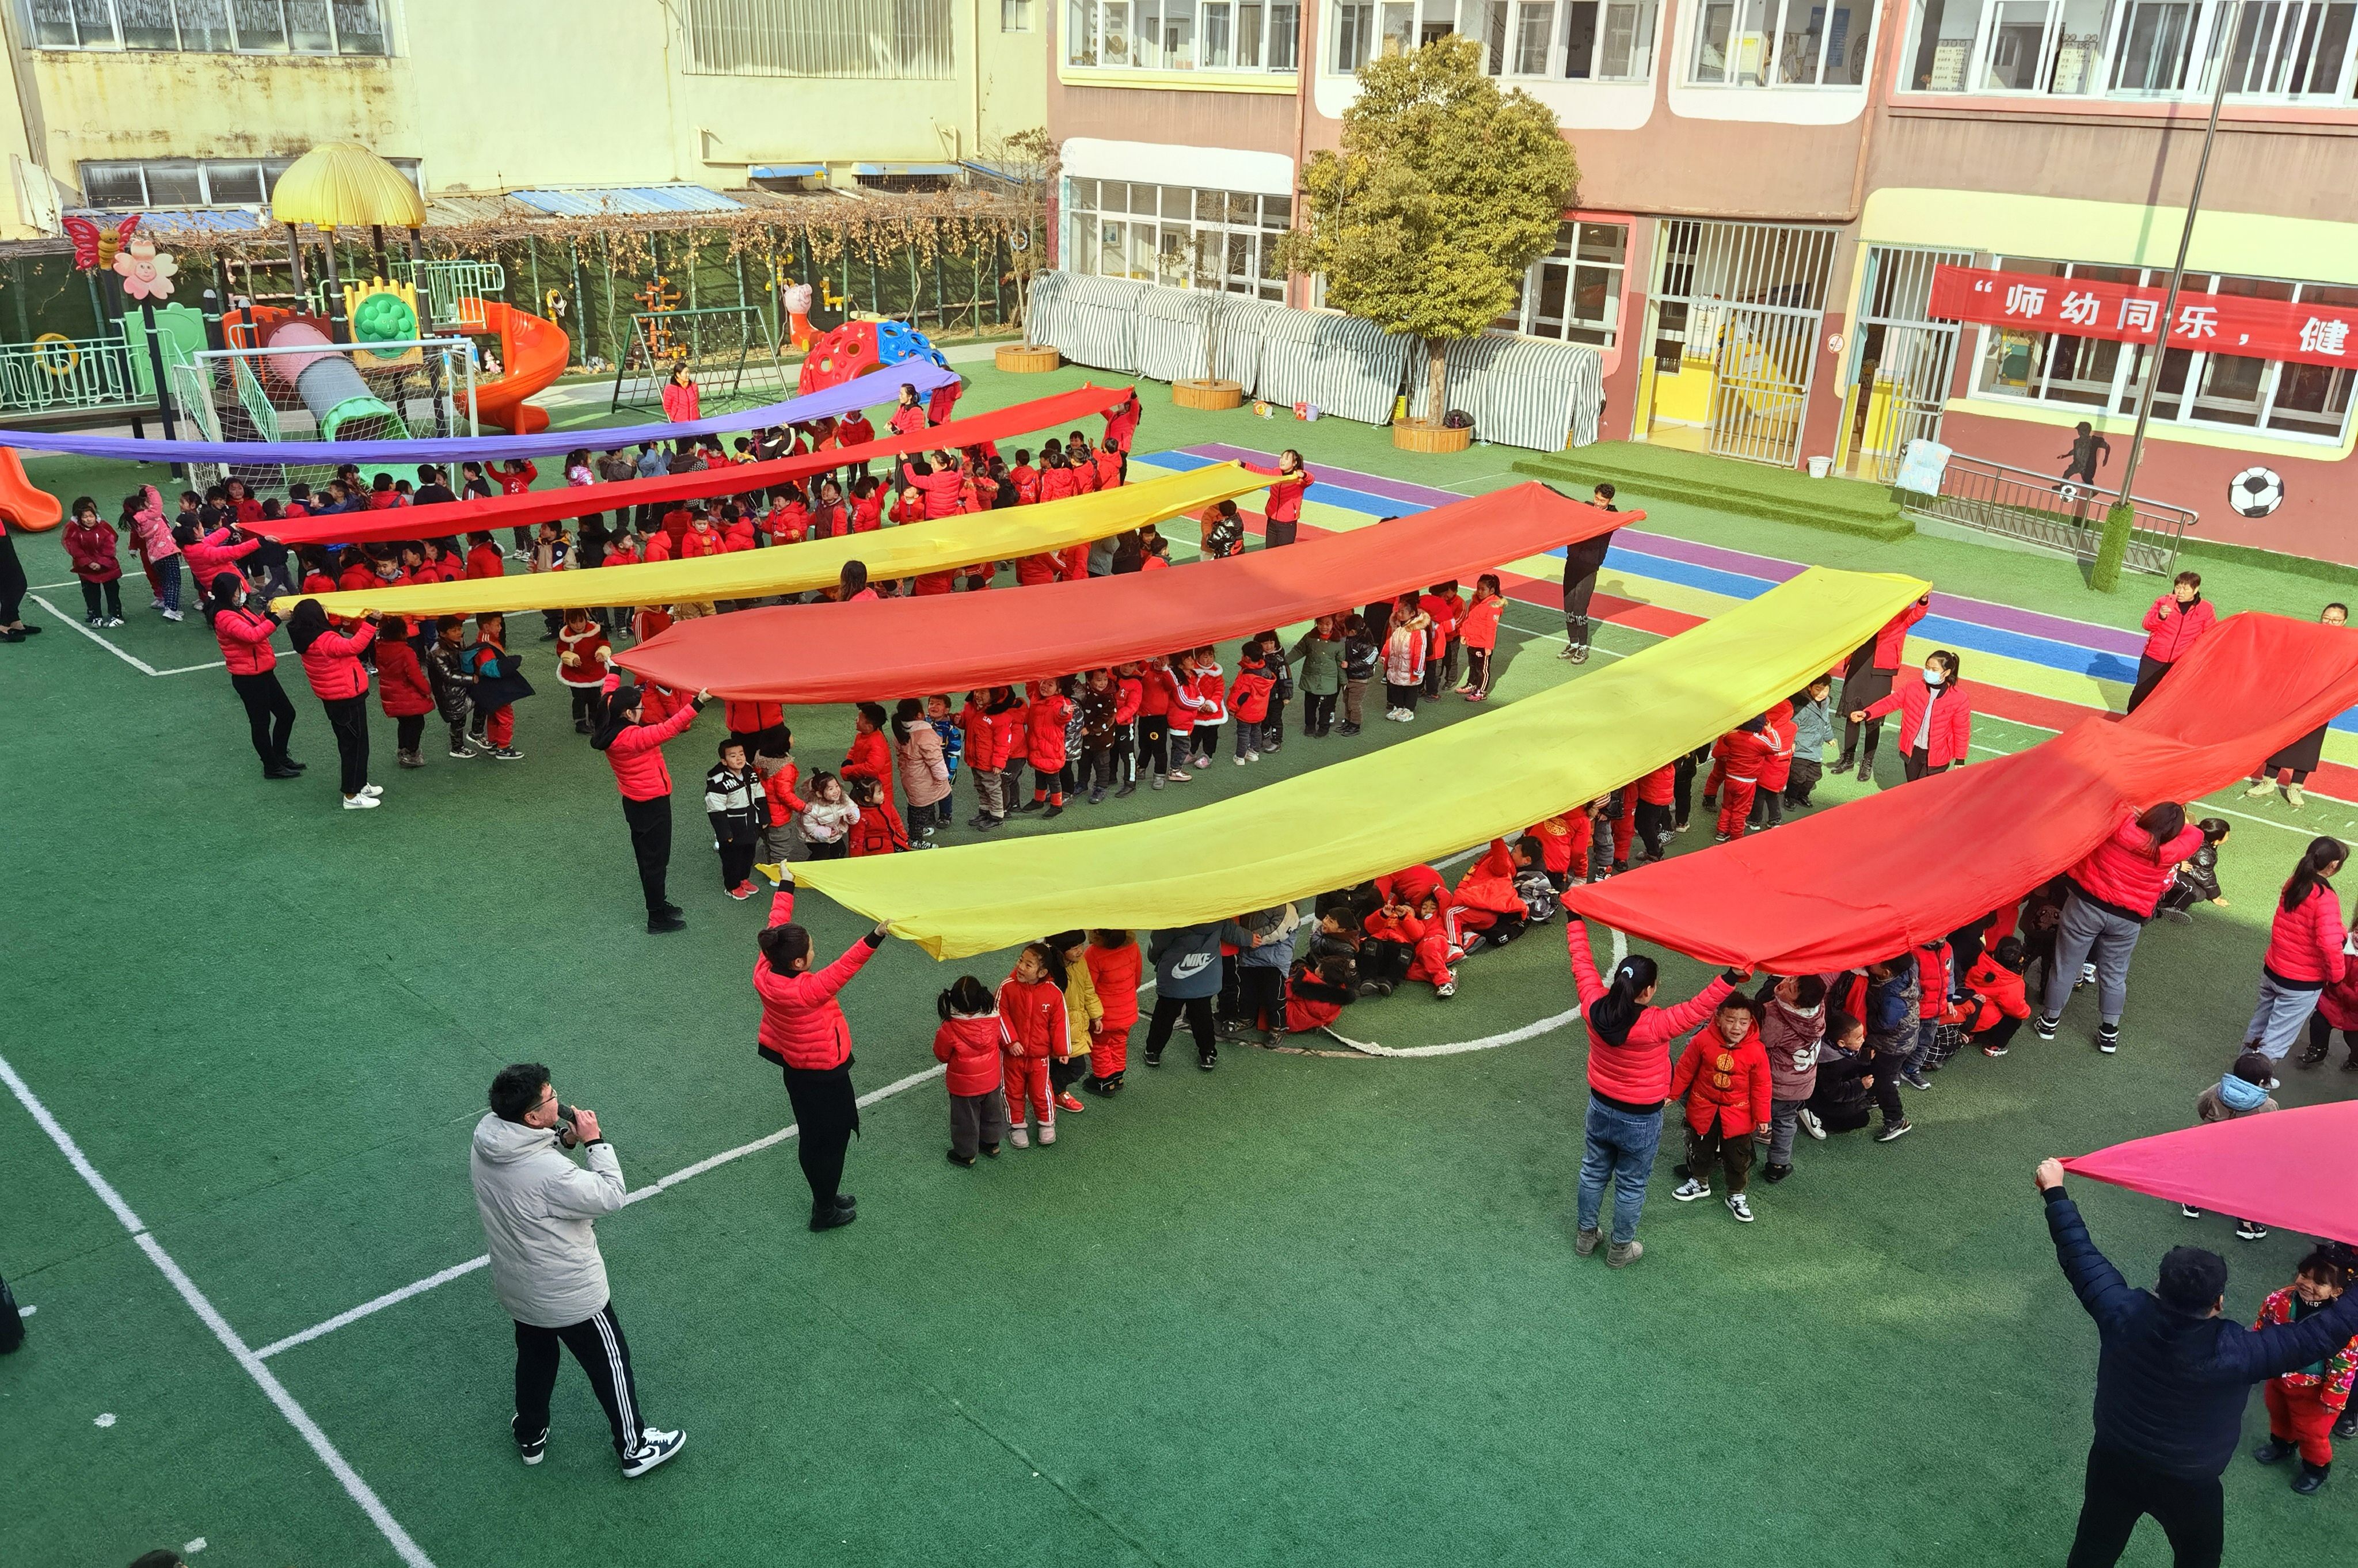 师幼同乐，健康成长 ——瓦窑镇中心幼儿园庆祝元旦活动